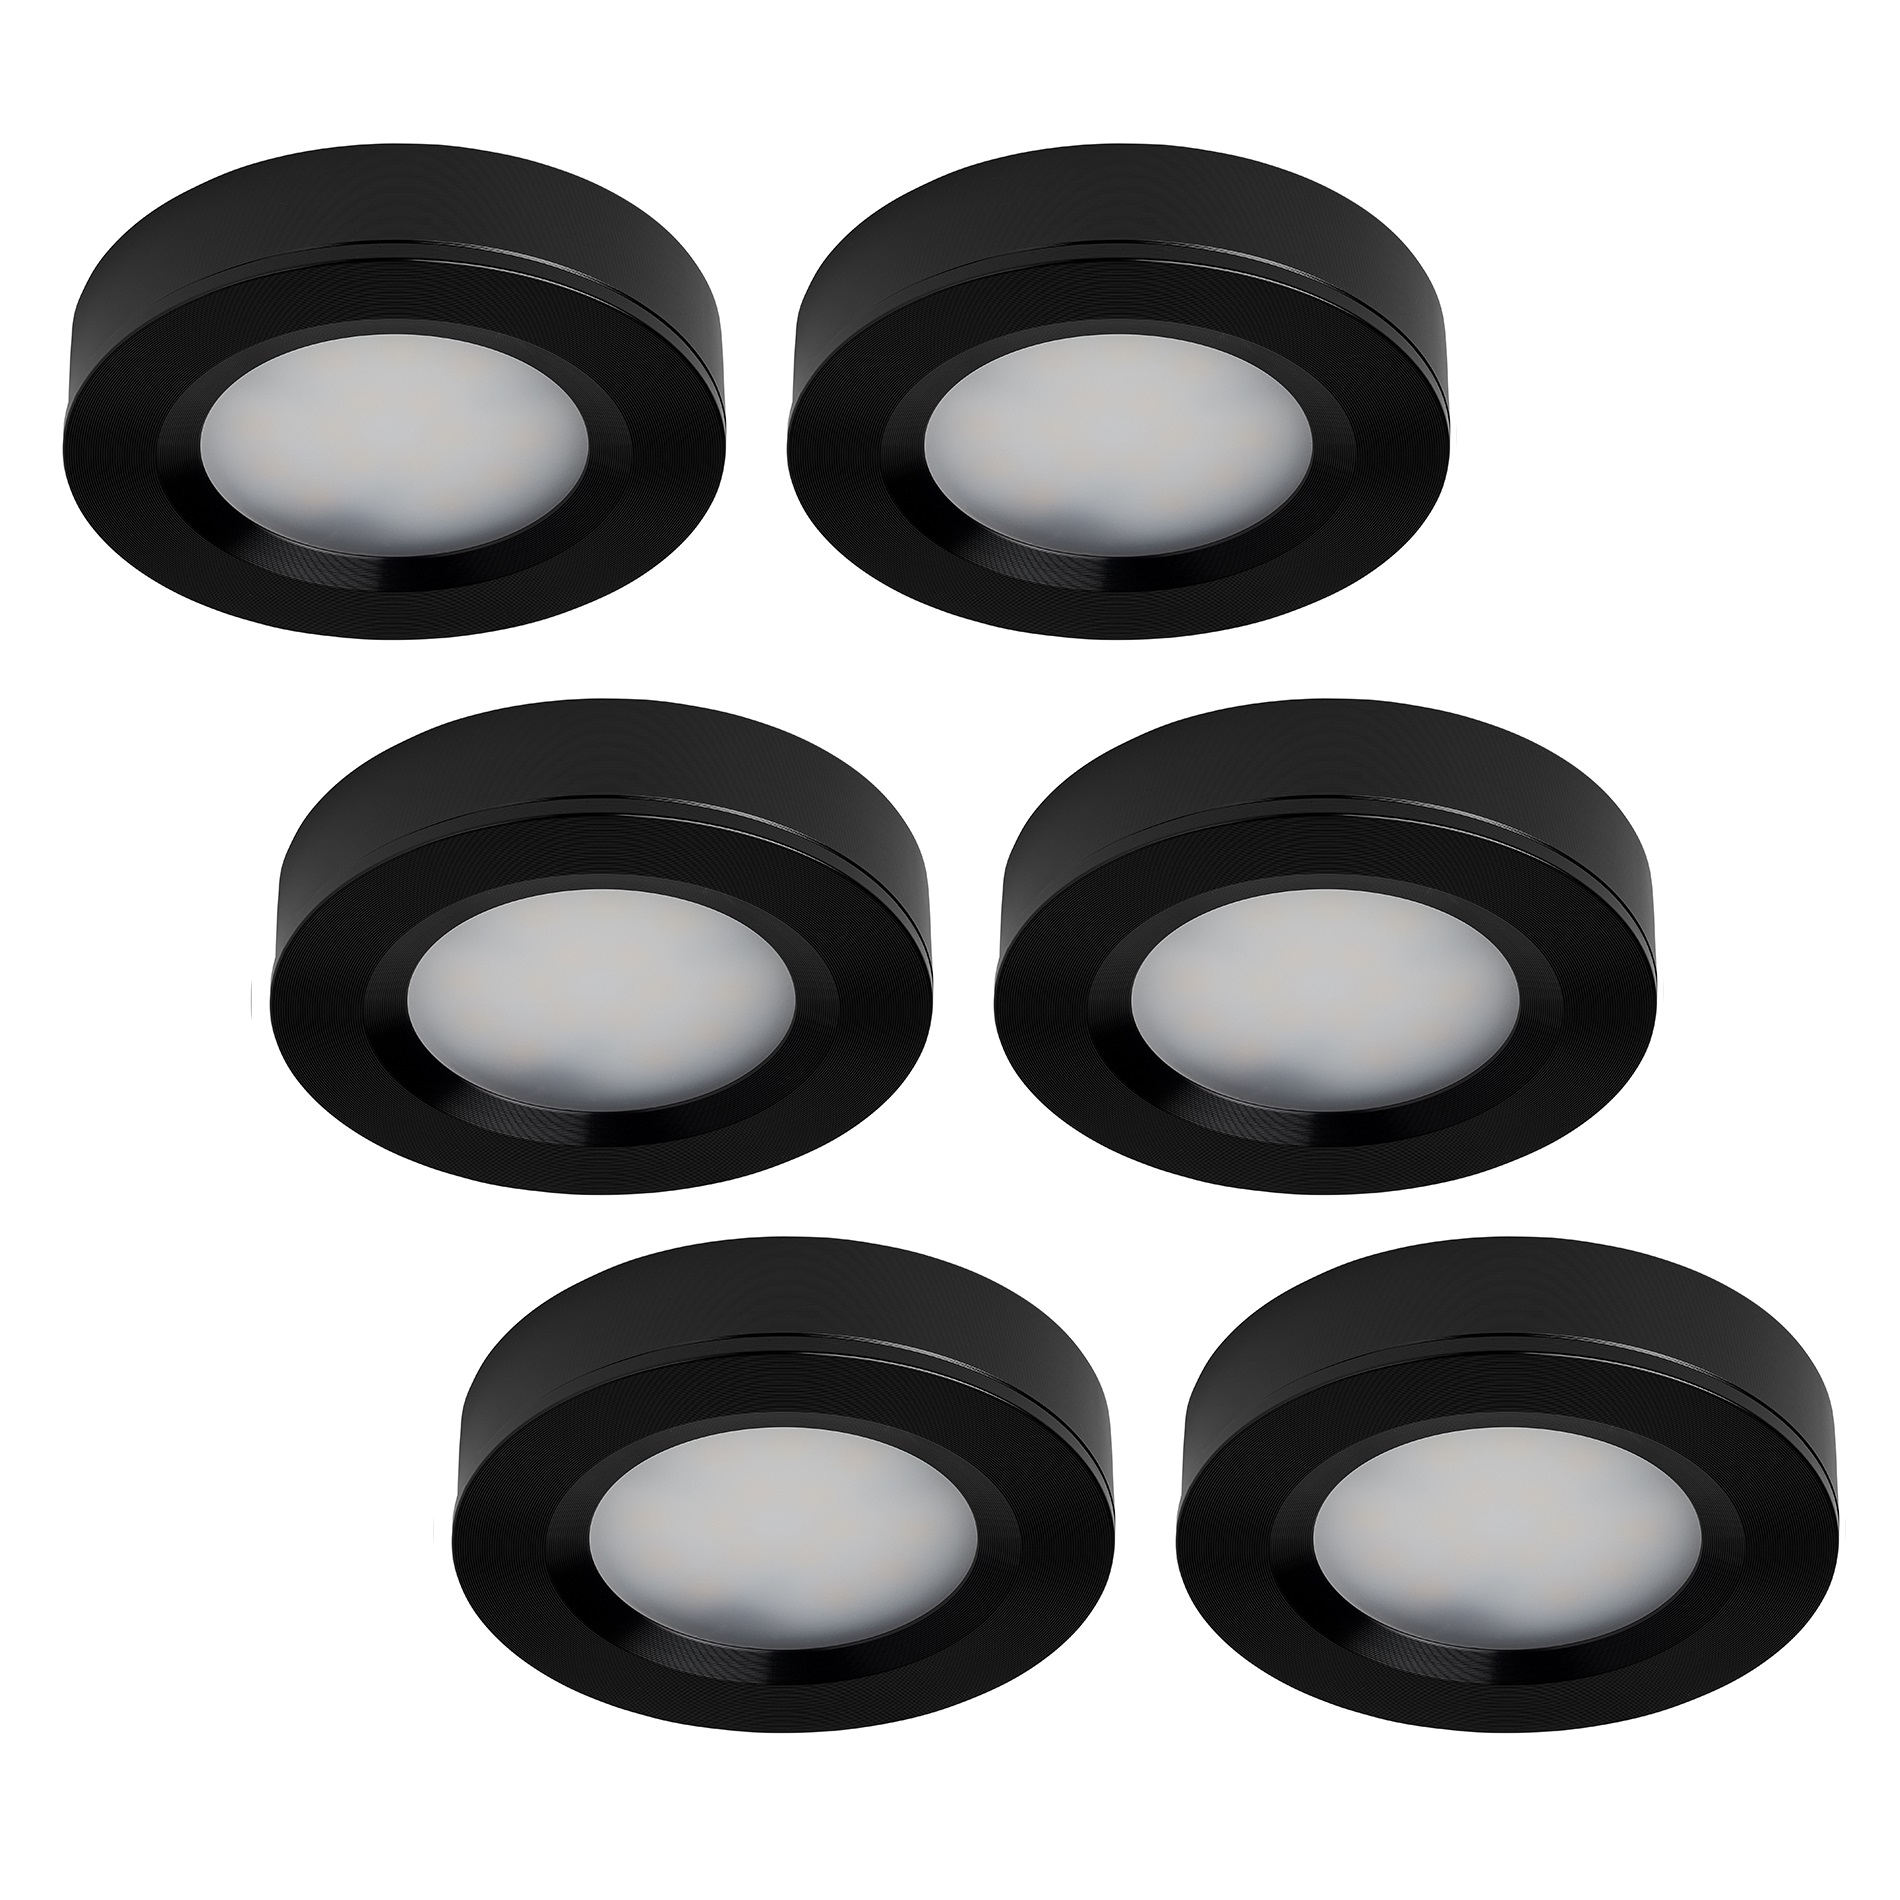 LED-opbouwspot set 6 stuks zwart 3W dimbaar | Led